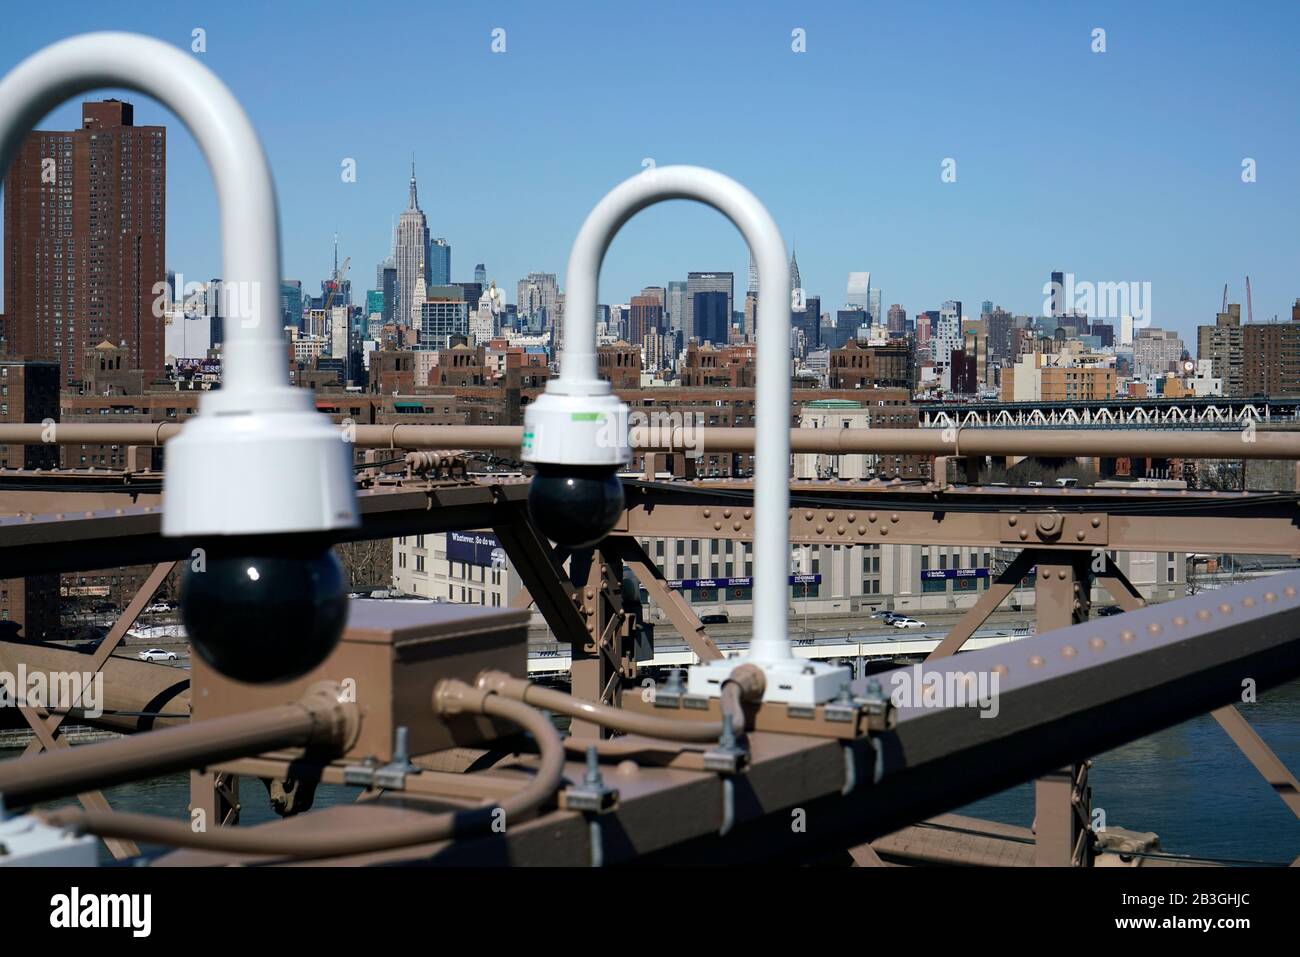 Cámaras de seguridad instaladas en el Puente de Brooklyn con el horizonte de Manhattan y el Empire State Building en el fondo, New York City.USA Foto de stock